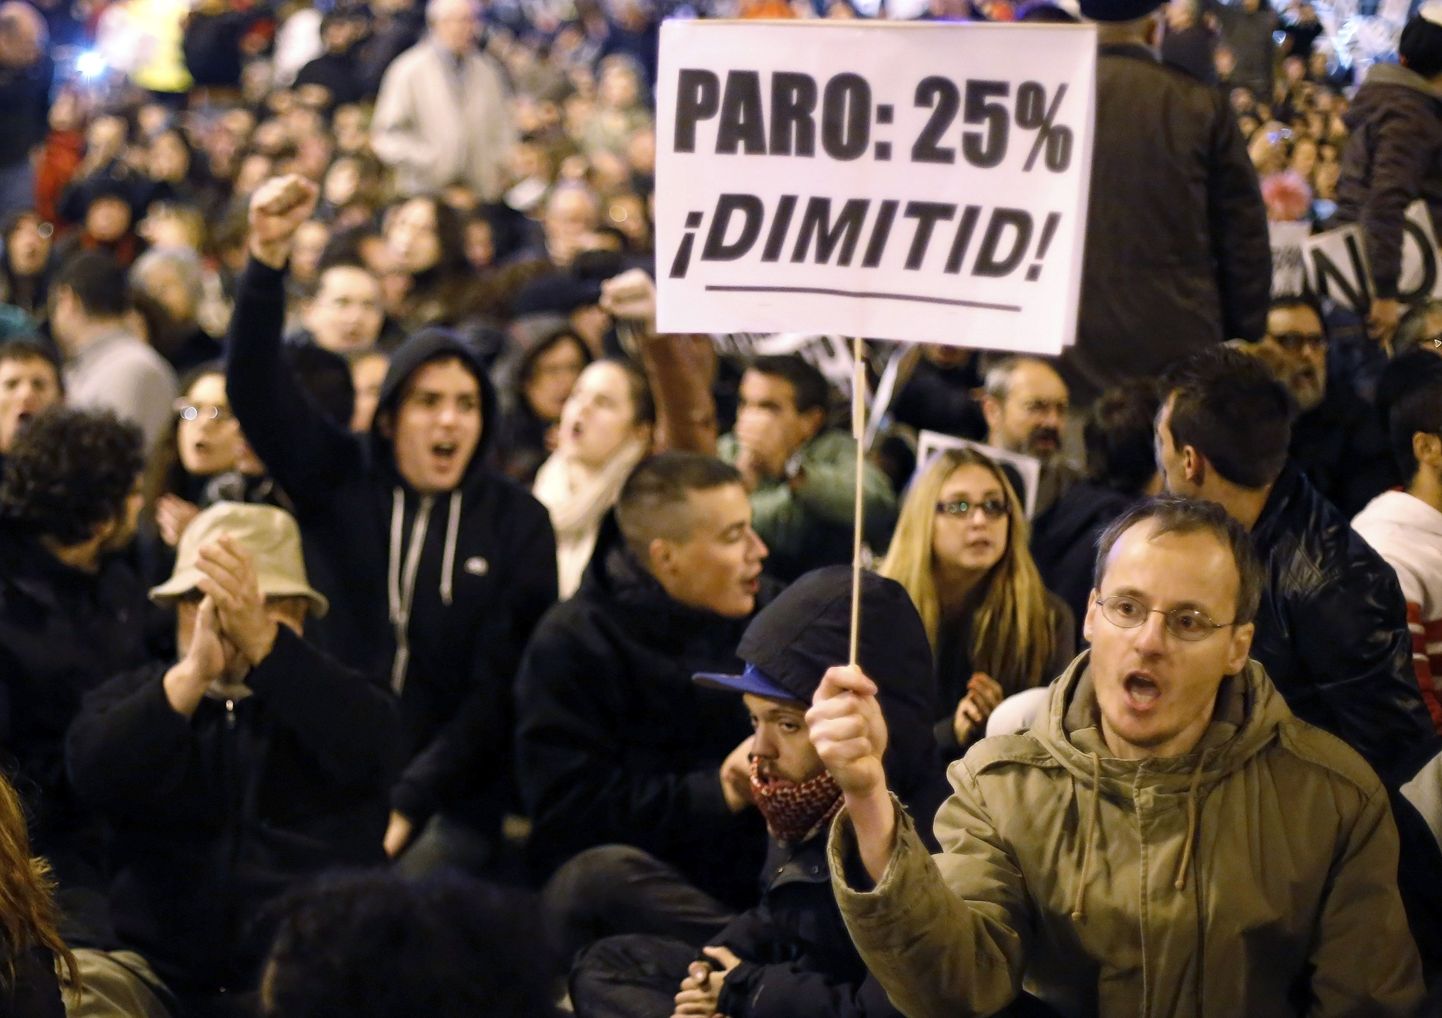 Hispaanlased eelmisel nädalavahetusel valitsuse kärpepaanide ja kõrge tööpuuduse vastu meelt avaldamas.